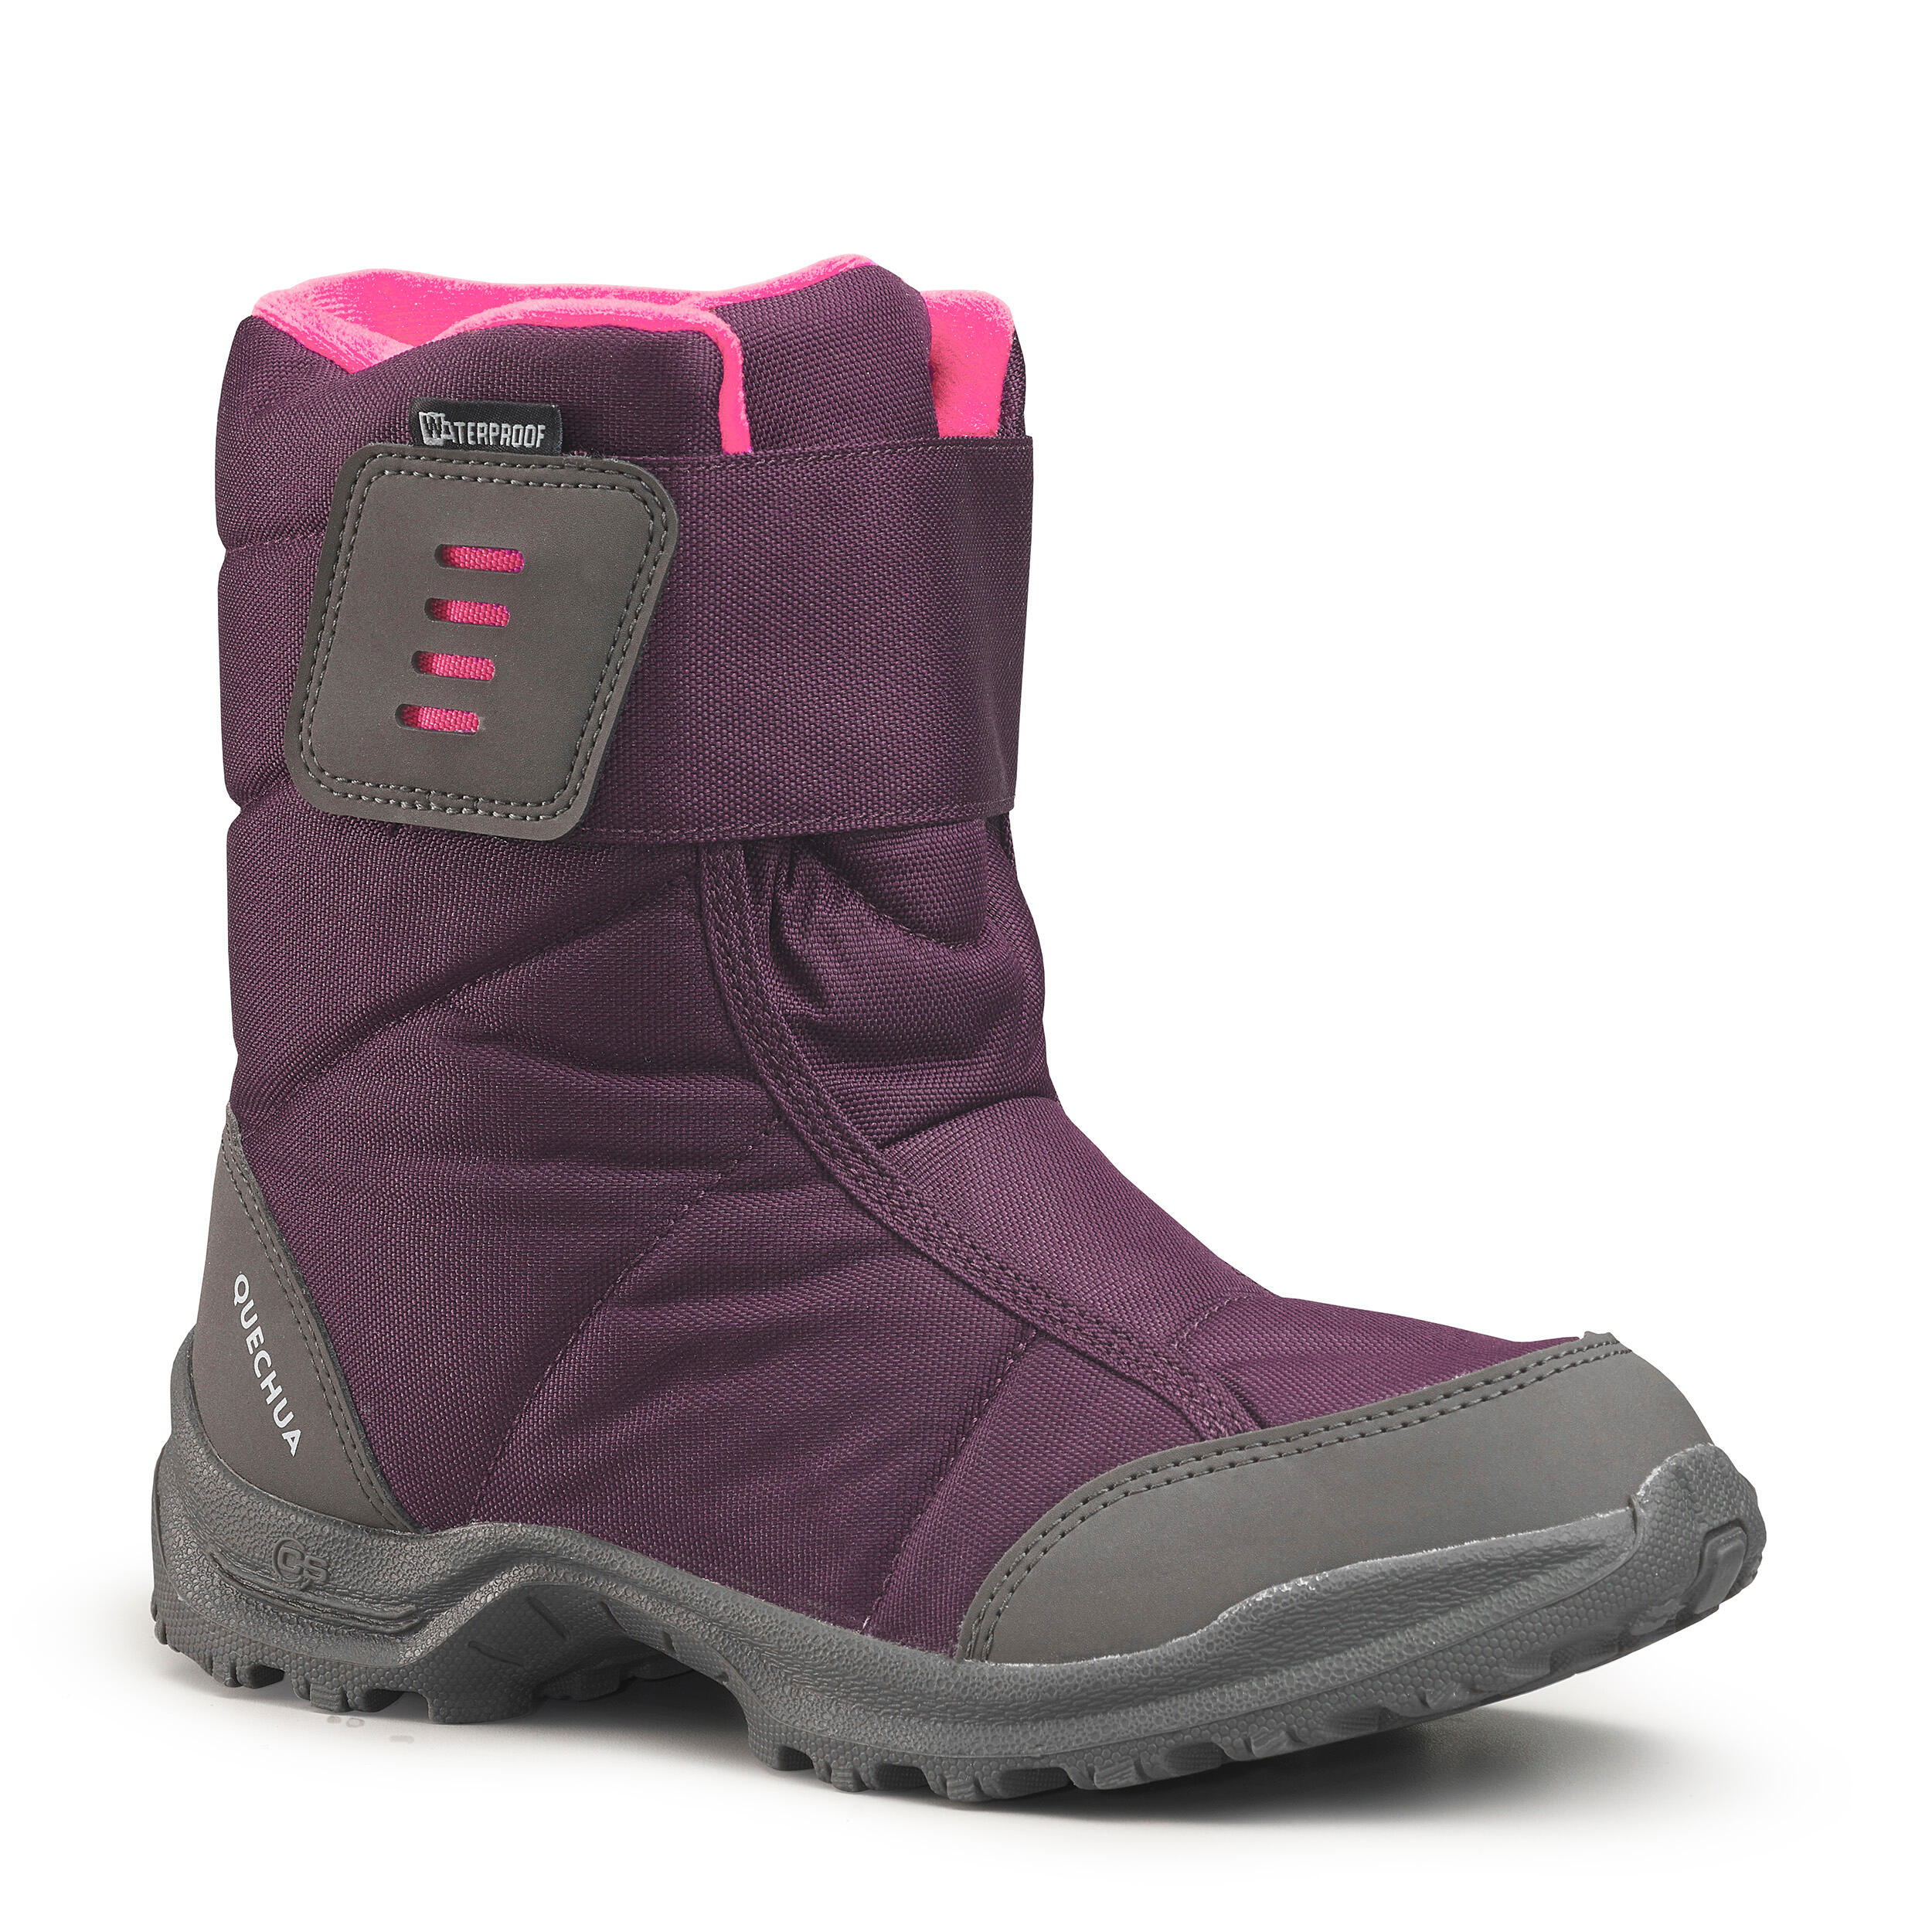 Kinder Schuhe Boots Stiefel winterschuhe 250D Regenstiefel Regenschuhe Neu 